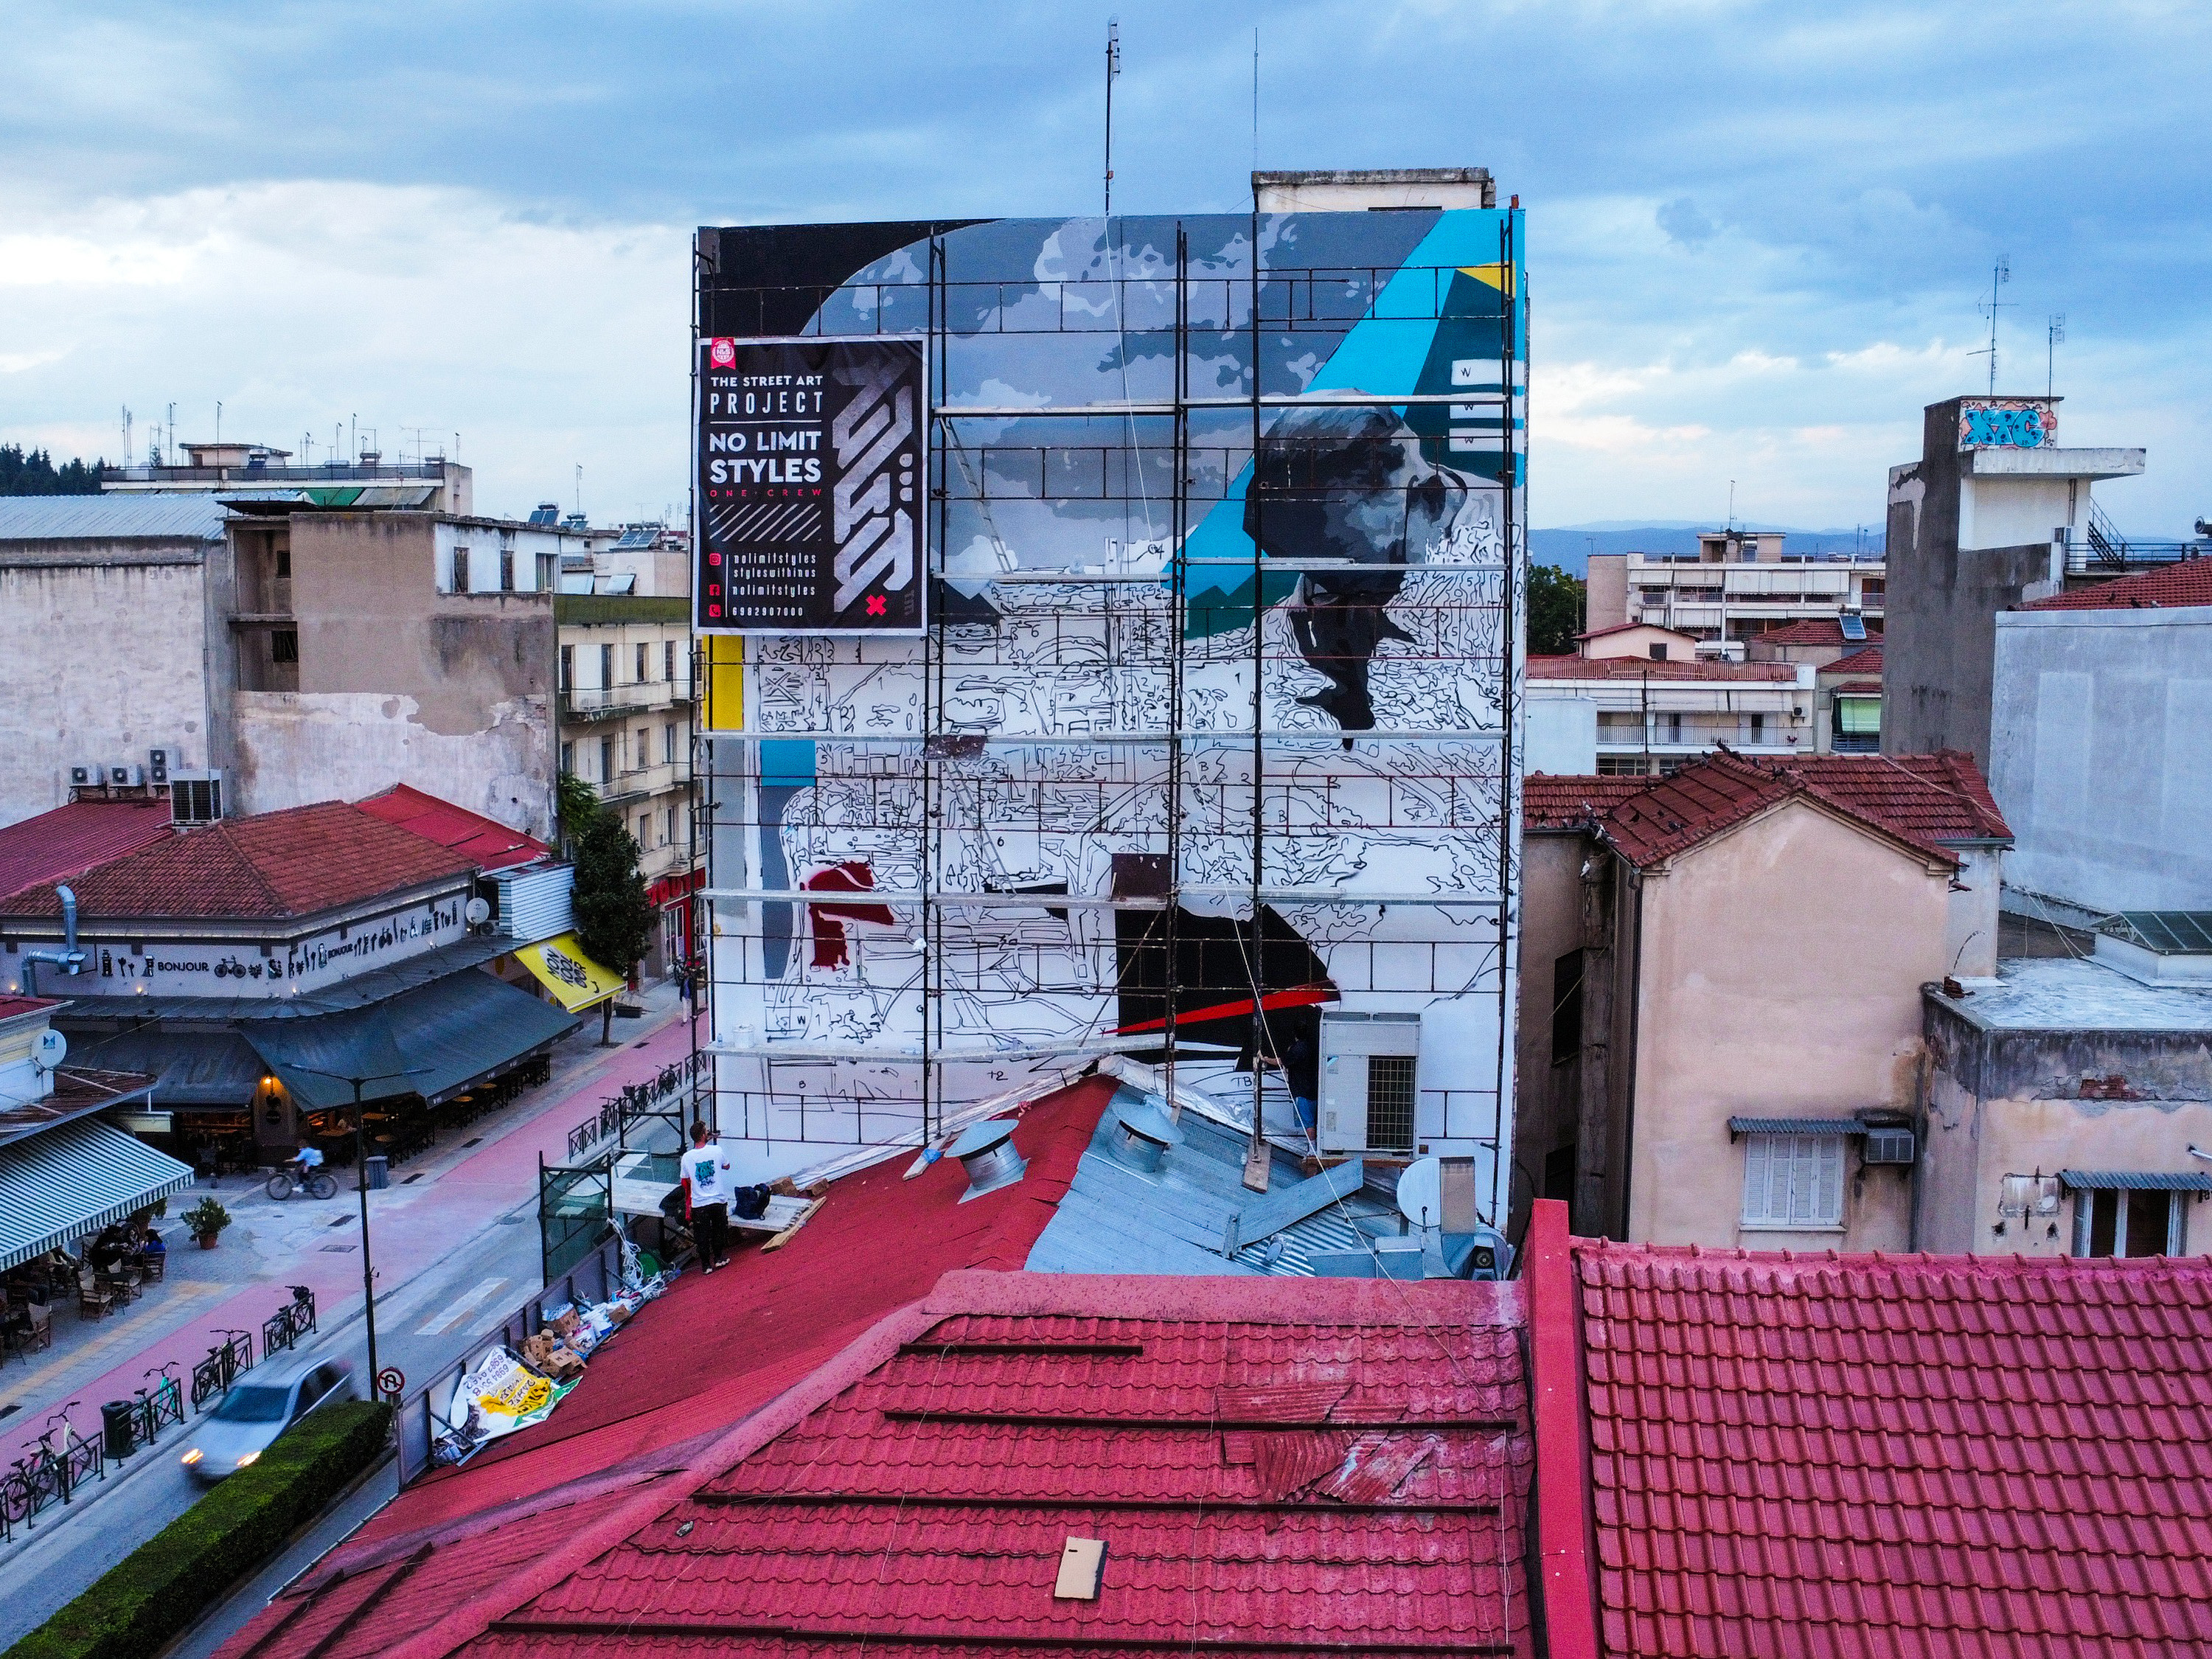 Nέο graffiti από τον Δήμο Τρικκαίων στην οδό Κονδύλη